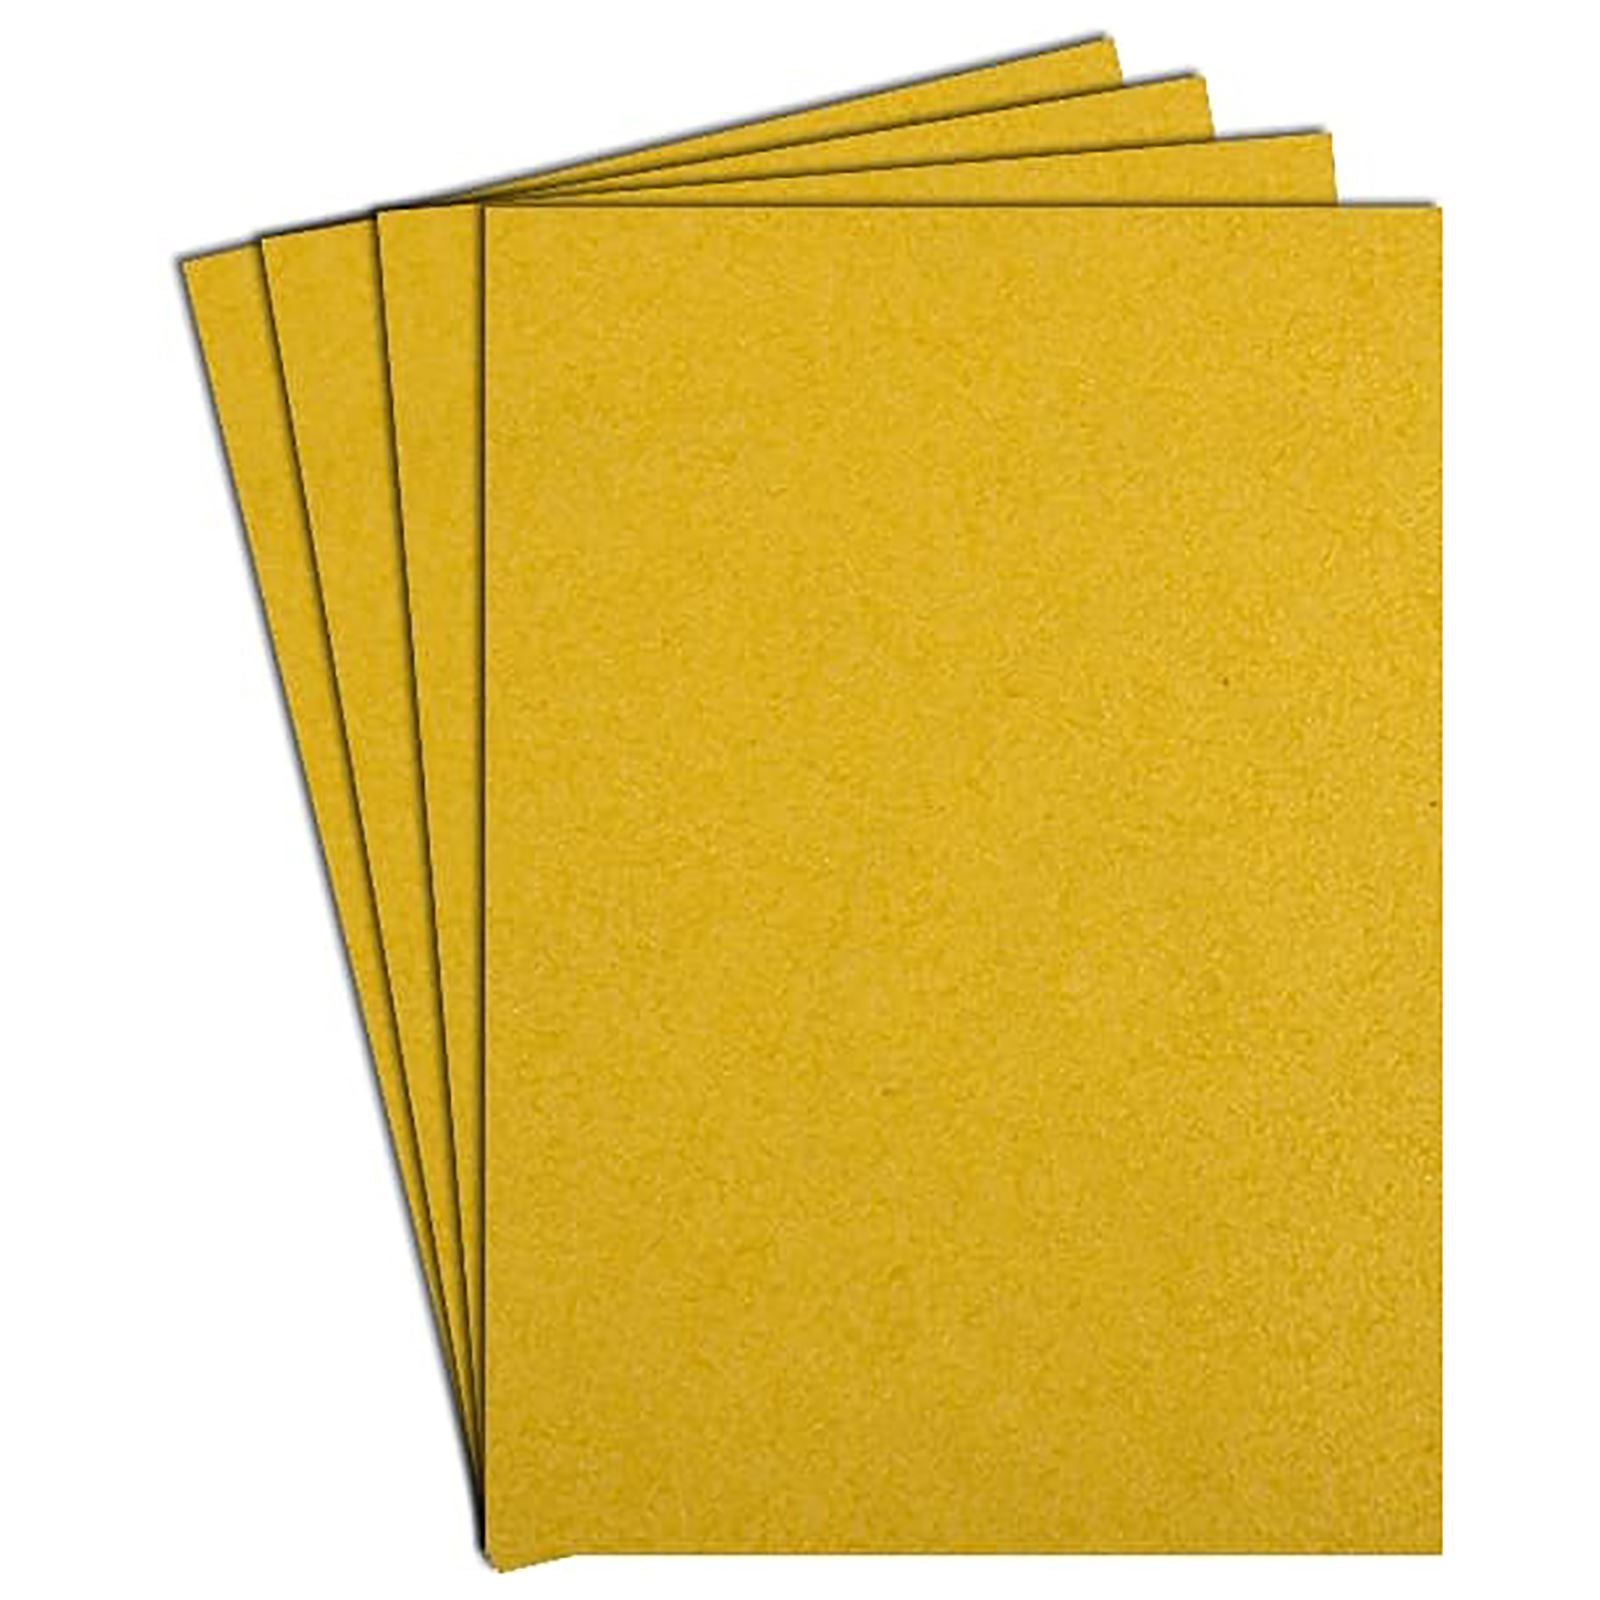 Klingspor Sanding Sheets Abrasive Paper Sandpaper 230 x 280mm PS30D 40-320 Grit